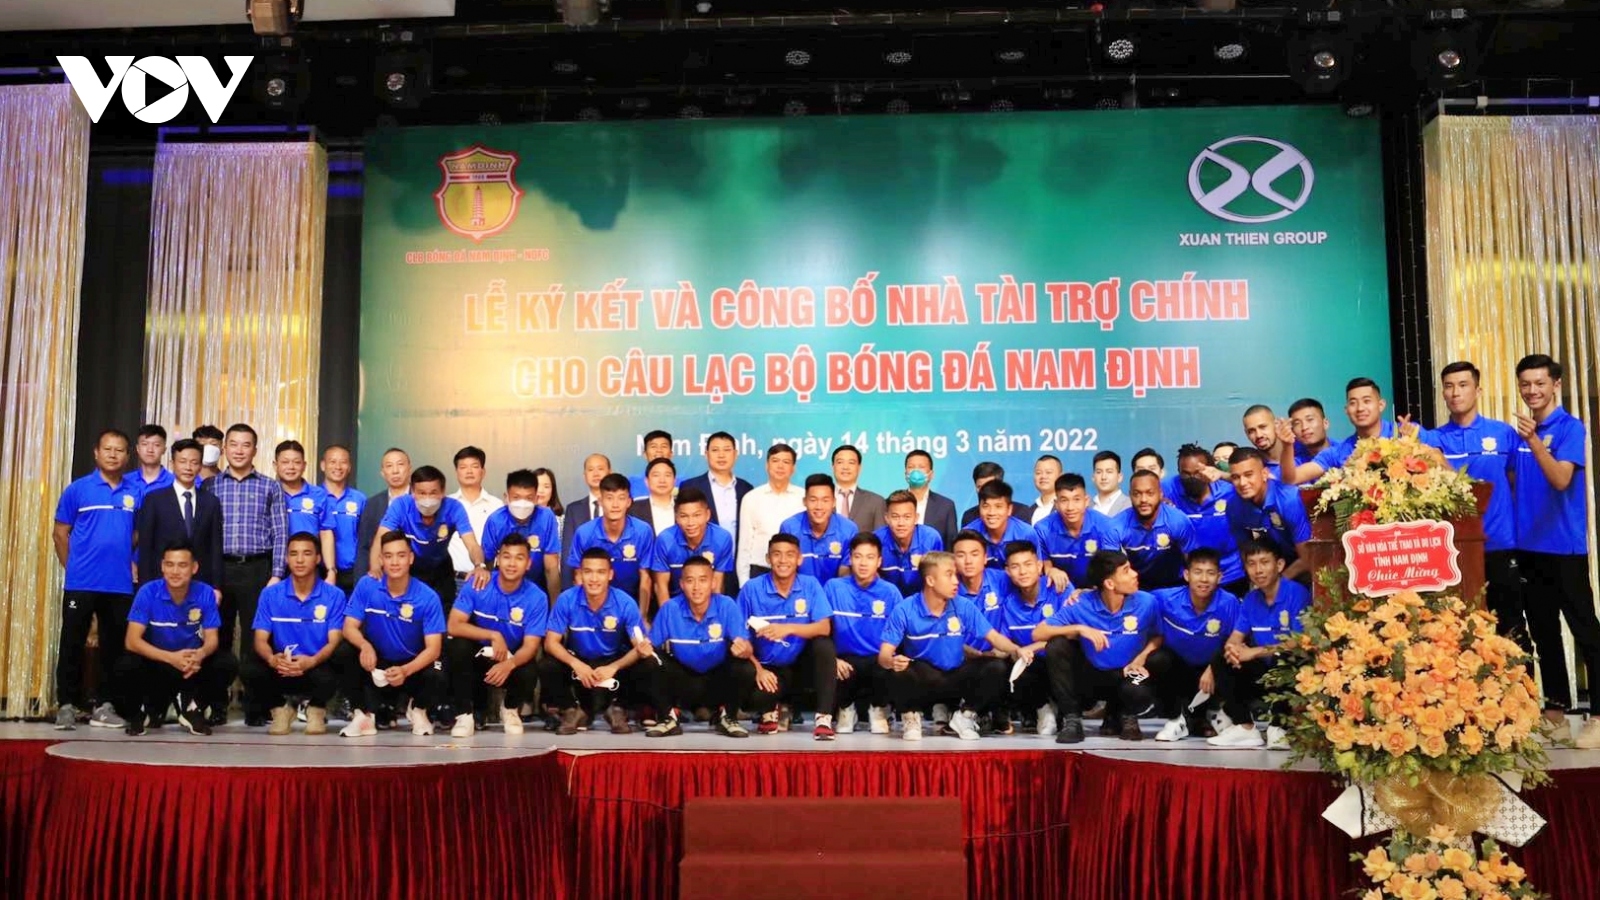 CLB Nam Định có gói tài trợ 200 tỷ đồng, HLV Văn Sỹ bắt đầu mơ lớn